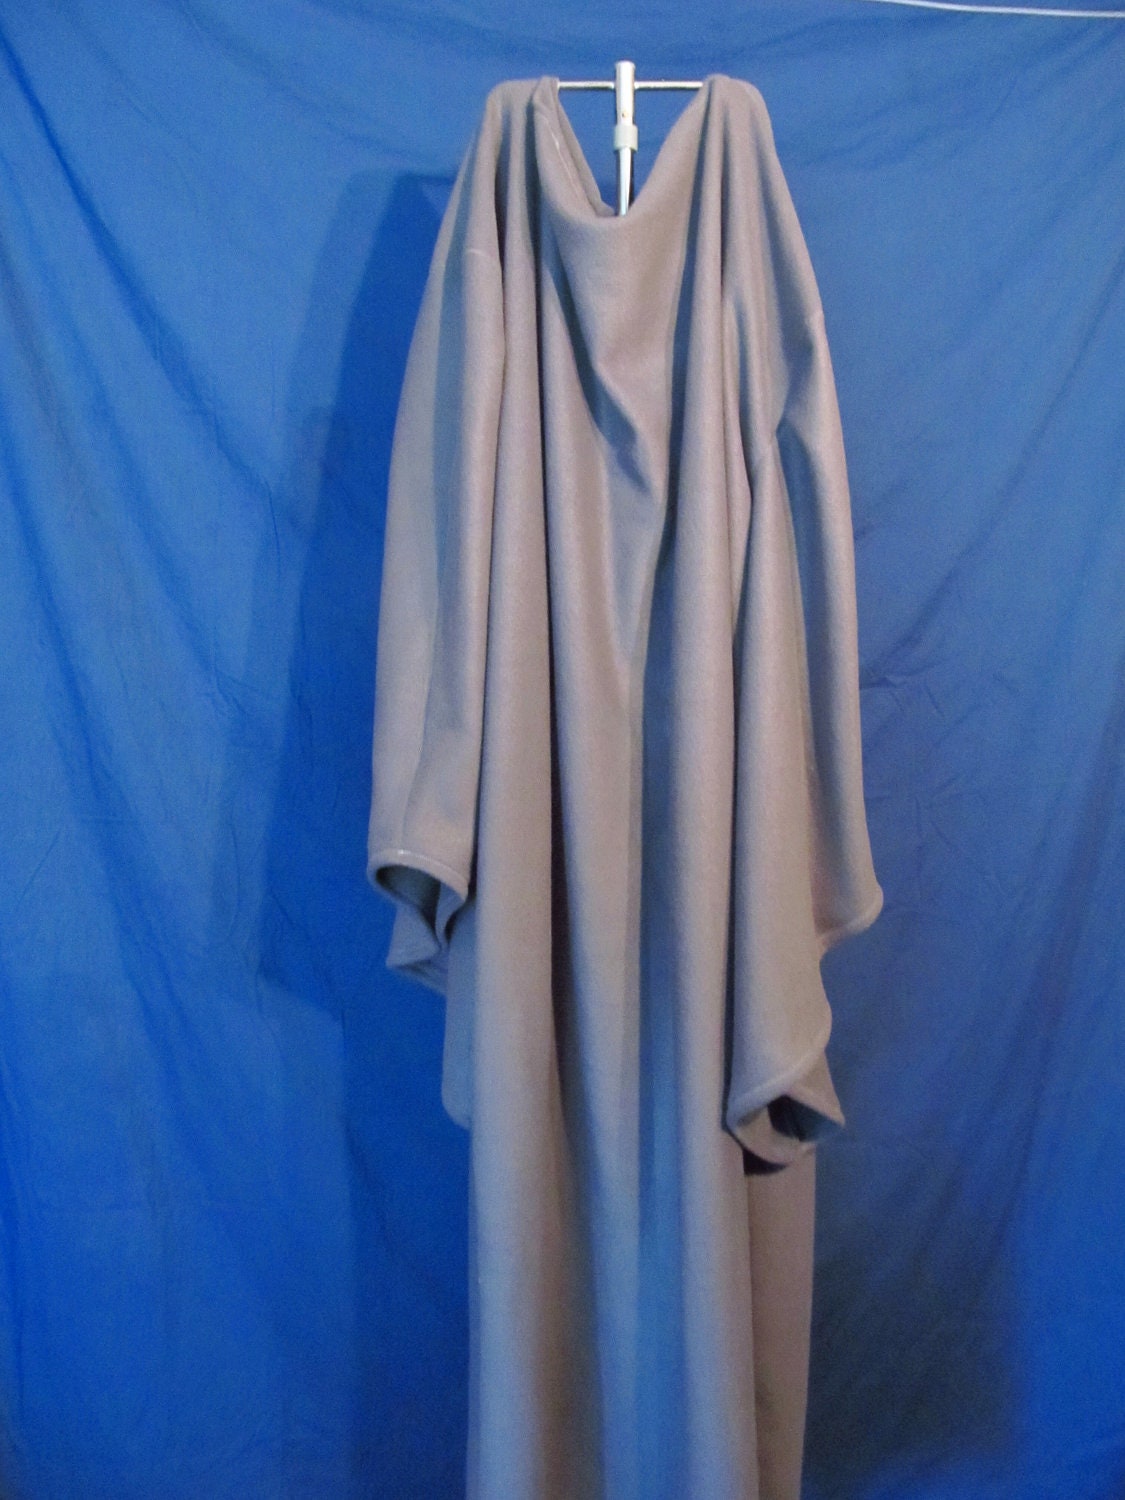 Gandalf The Grey Costume Replica